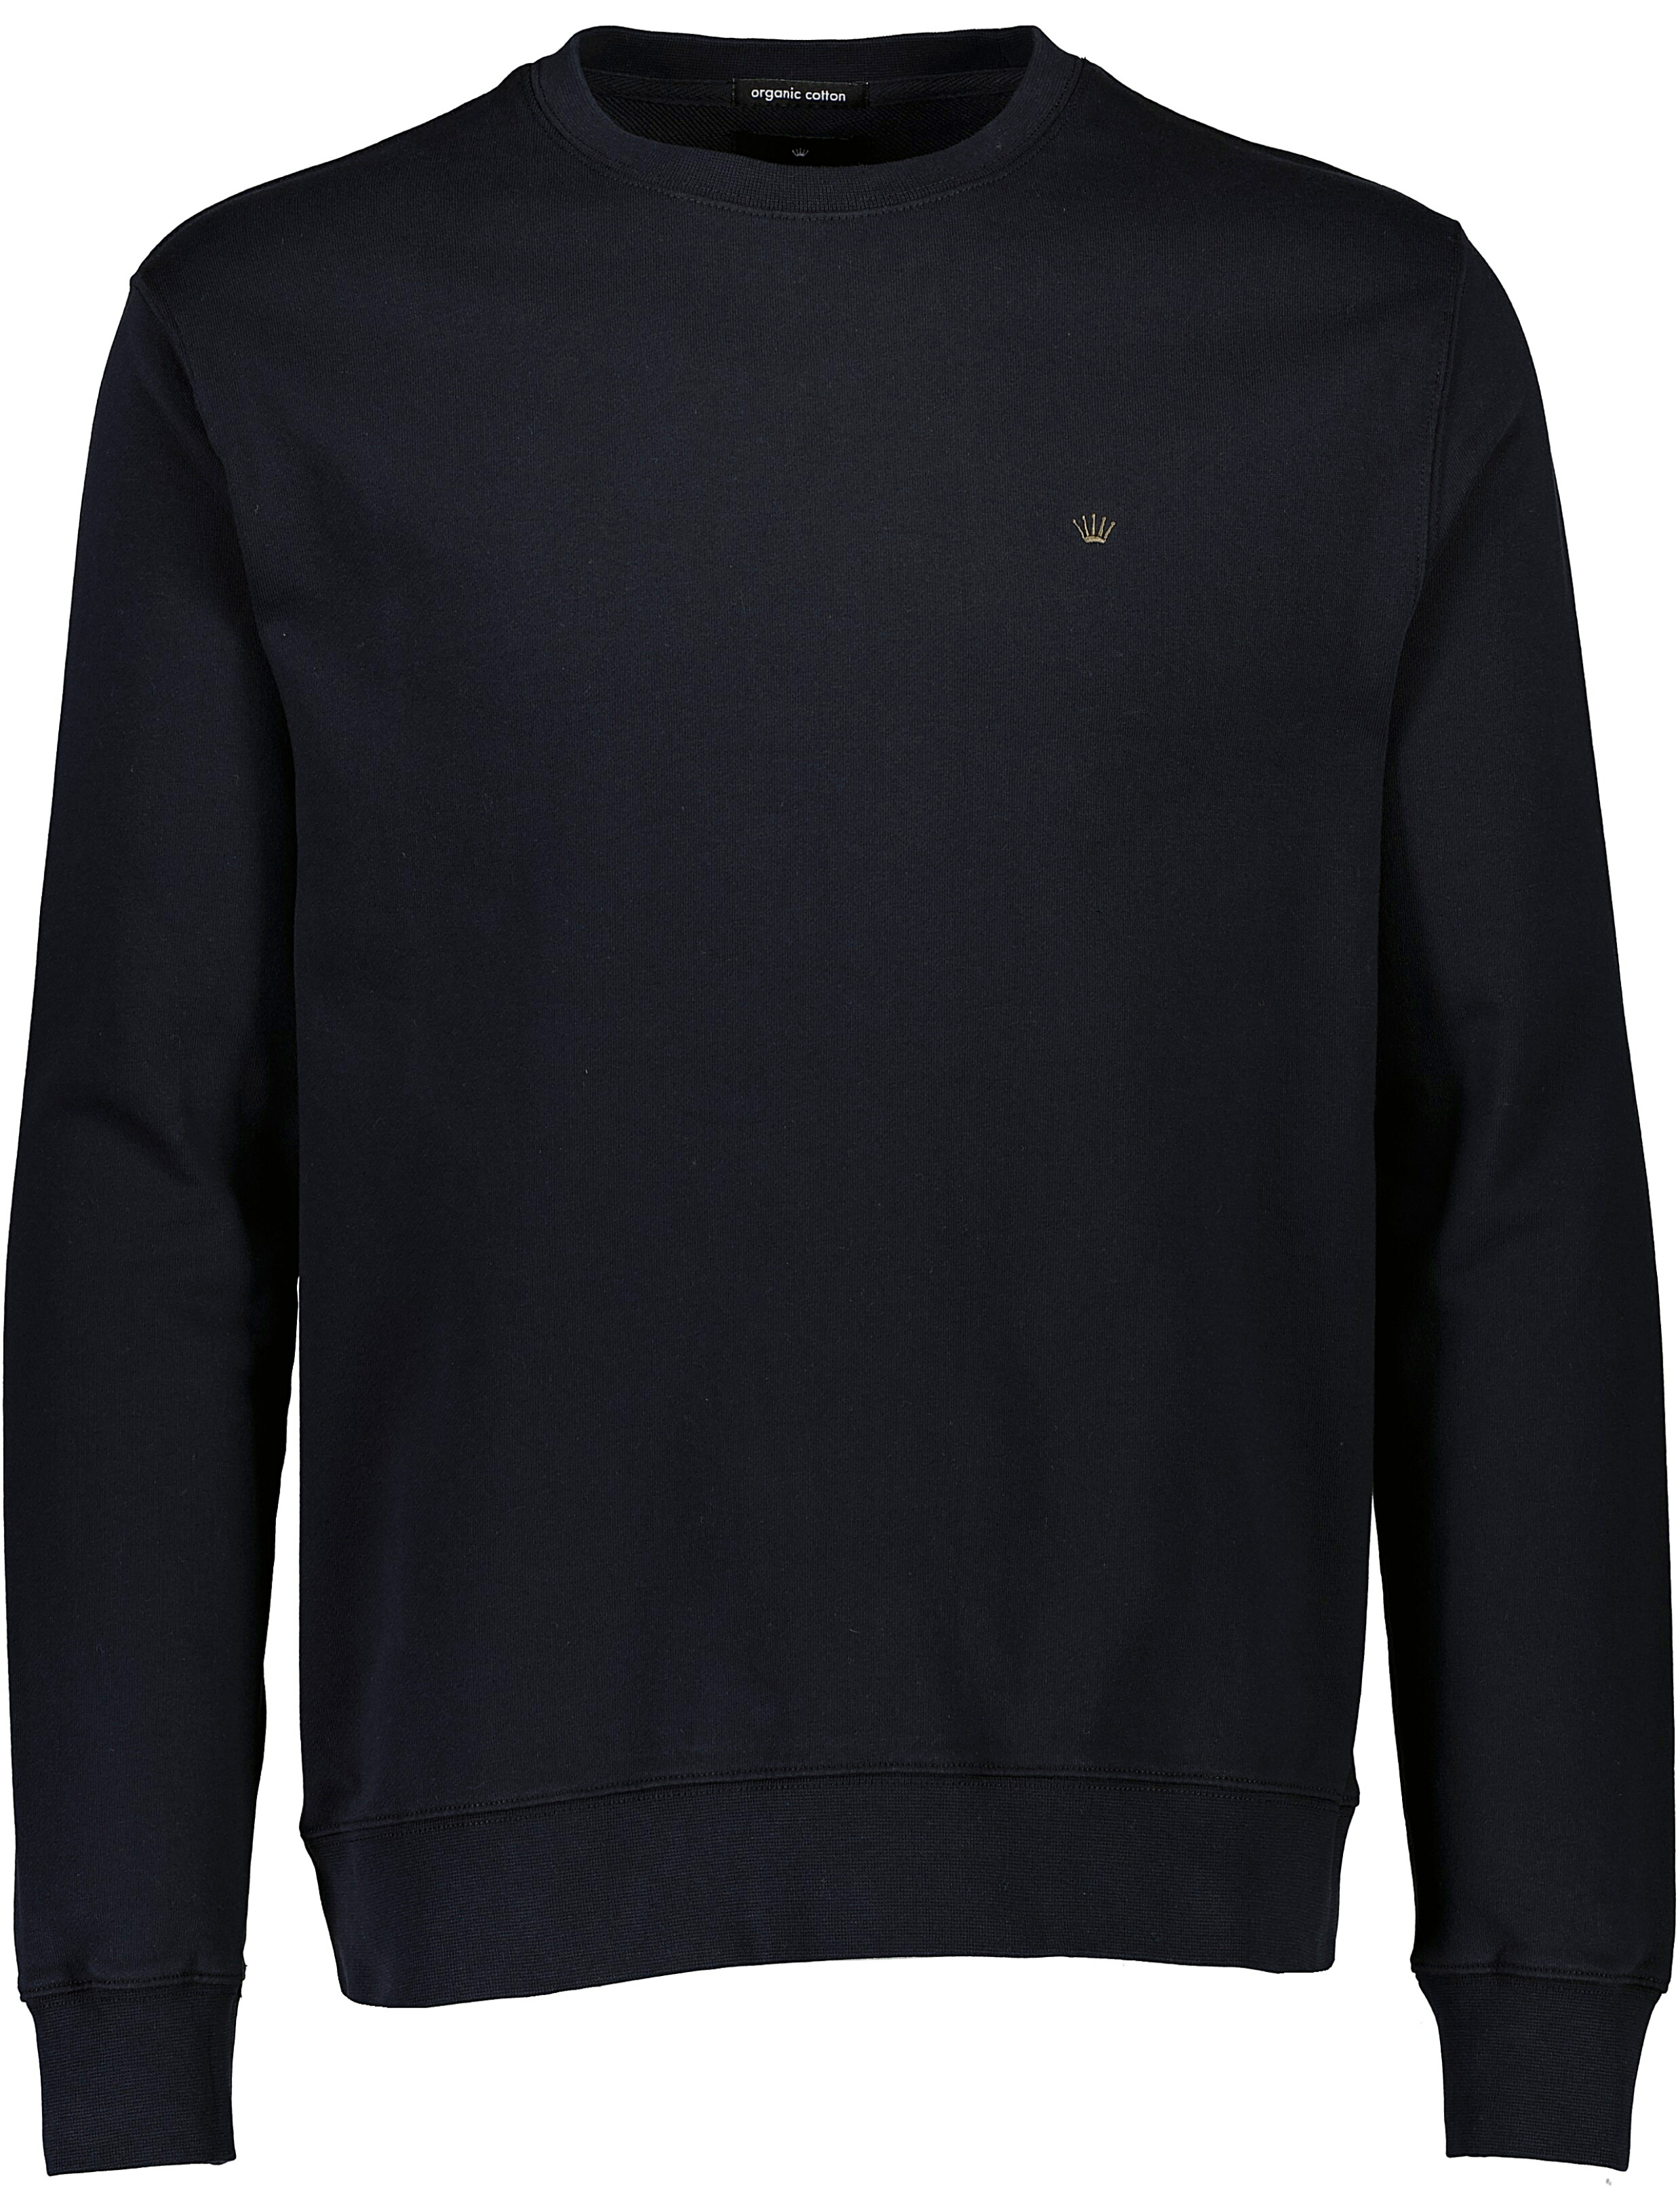 Junk de Luxe Sweatshirt svart / black